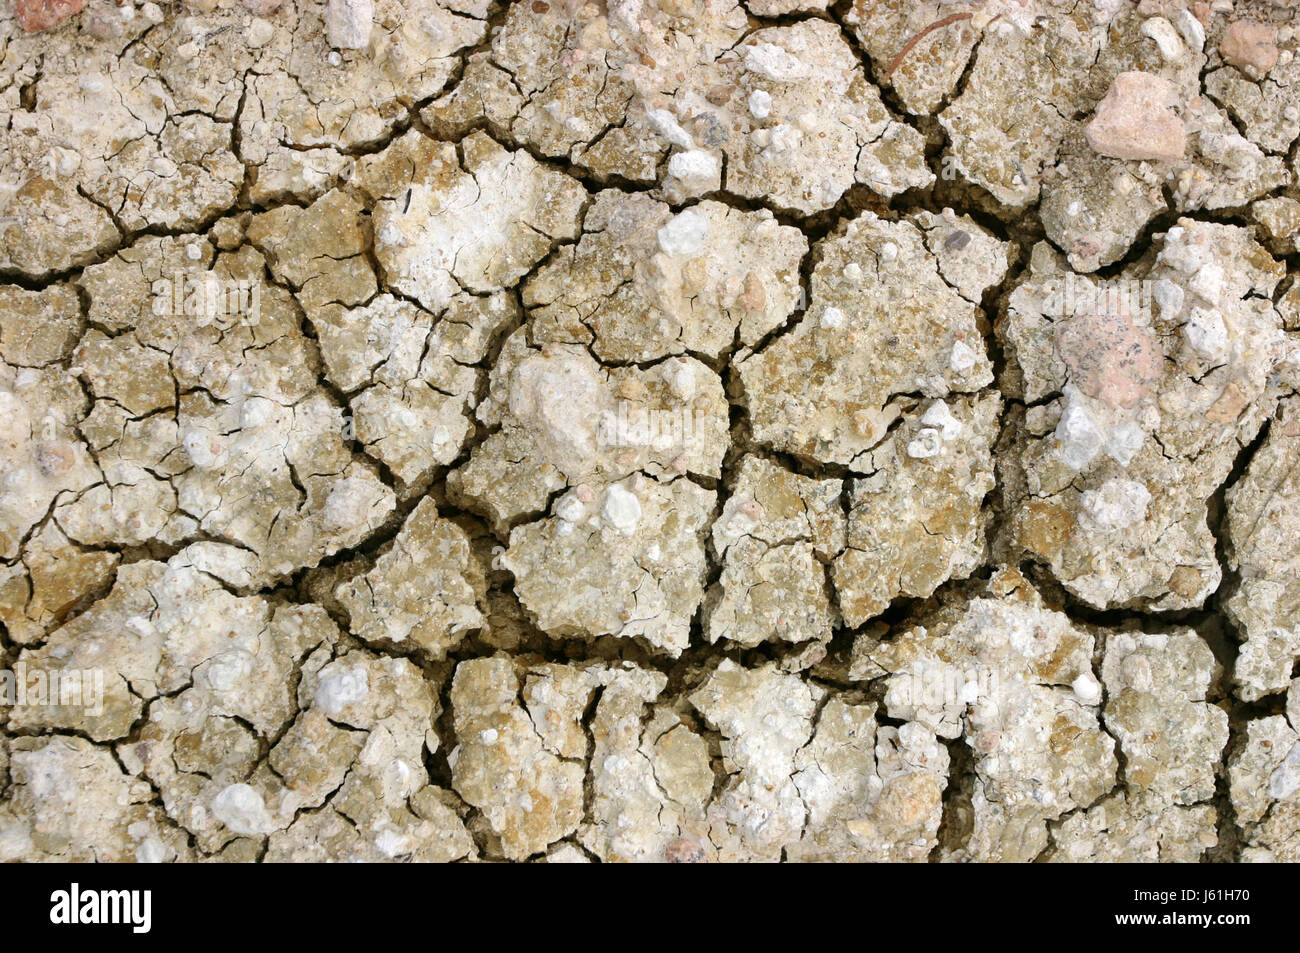 La sécheresse La sécheresse du désert désert plie de boue fissuré fissuré poêlé terre végétale Banque D'Images